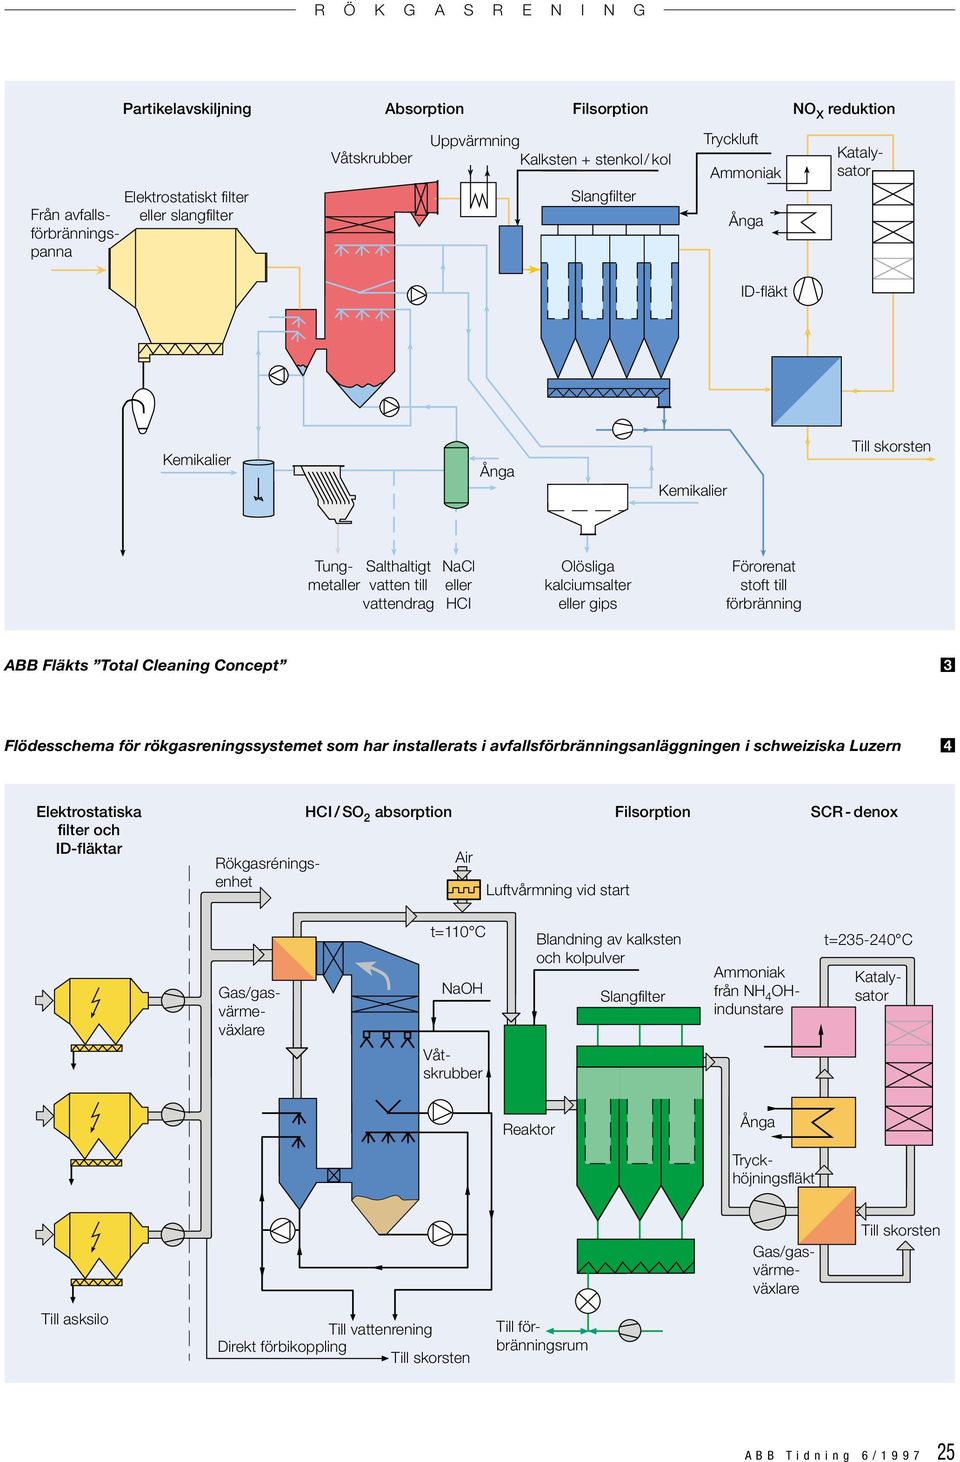 till förbränning ABB Fläkts Total Cleaning Concept 3 Flödesschema för rökgasreningssystemet som har installerats i avfallsförbränningsanläggningen i schweiziska Luzern 4 Elektrostatiska filter och